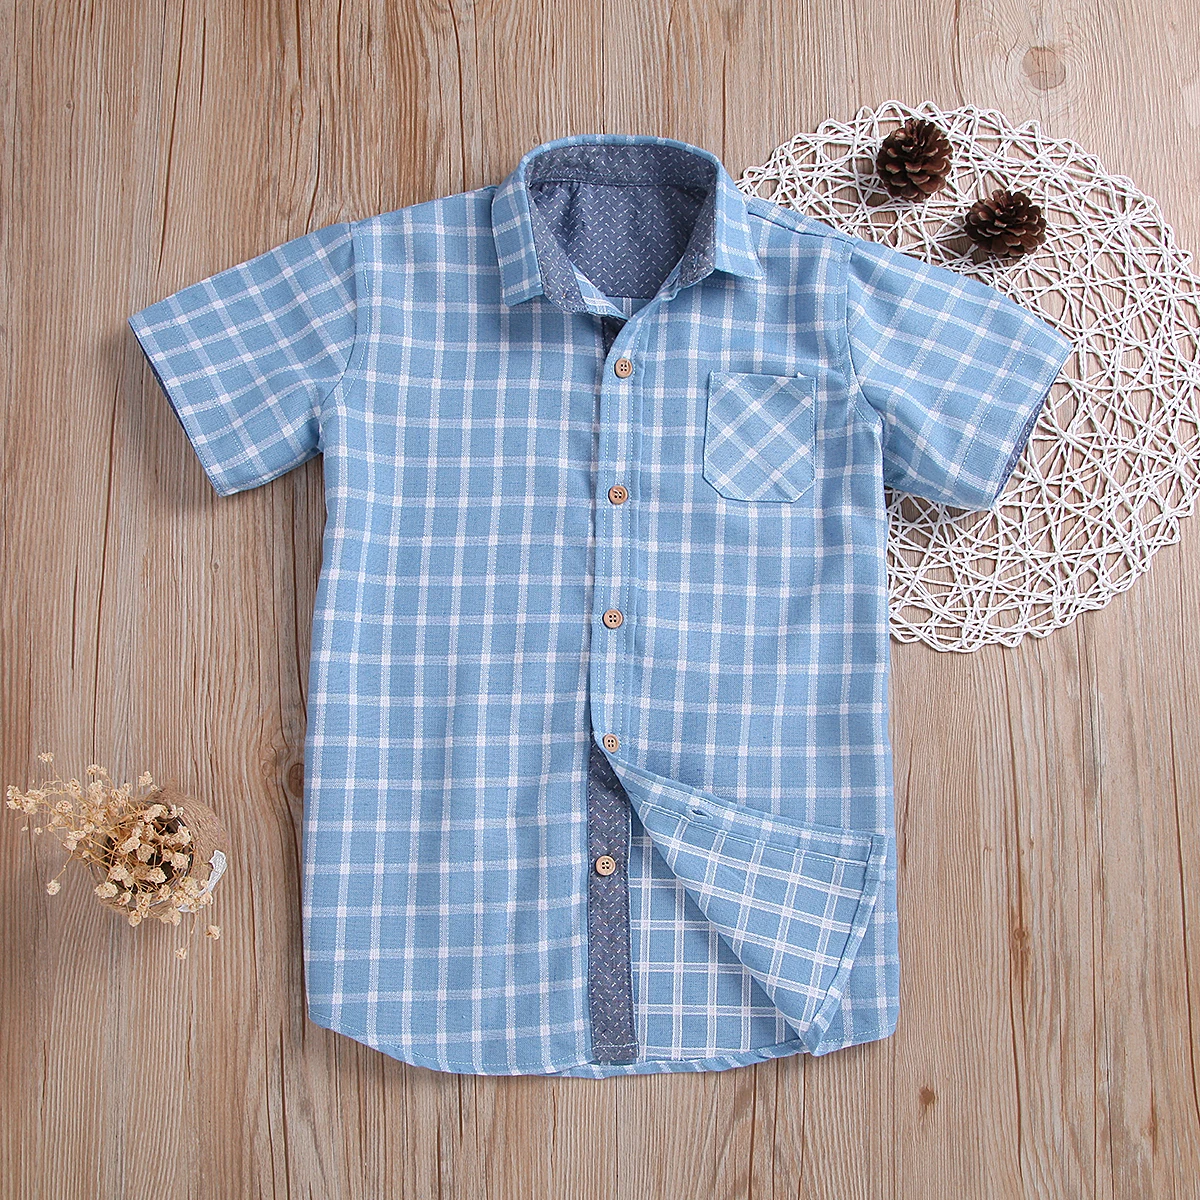 Новые повседневные летние клетчатые рубашки с короткими рукавами для мальчиков, повседневная детская одежда с отложным воротником, рубашки для маленьких мальчиков 3-10 лет - Цвет: Синий